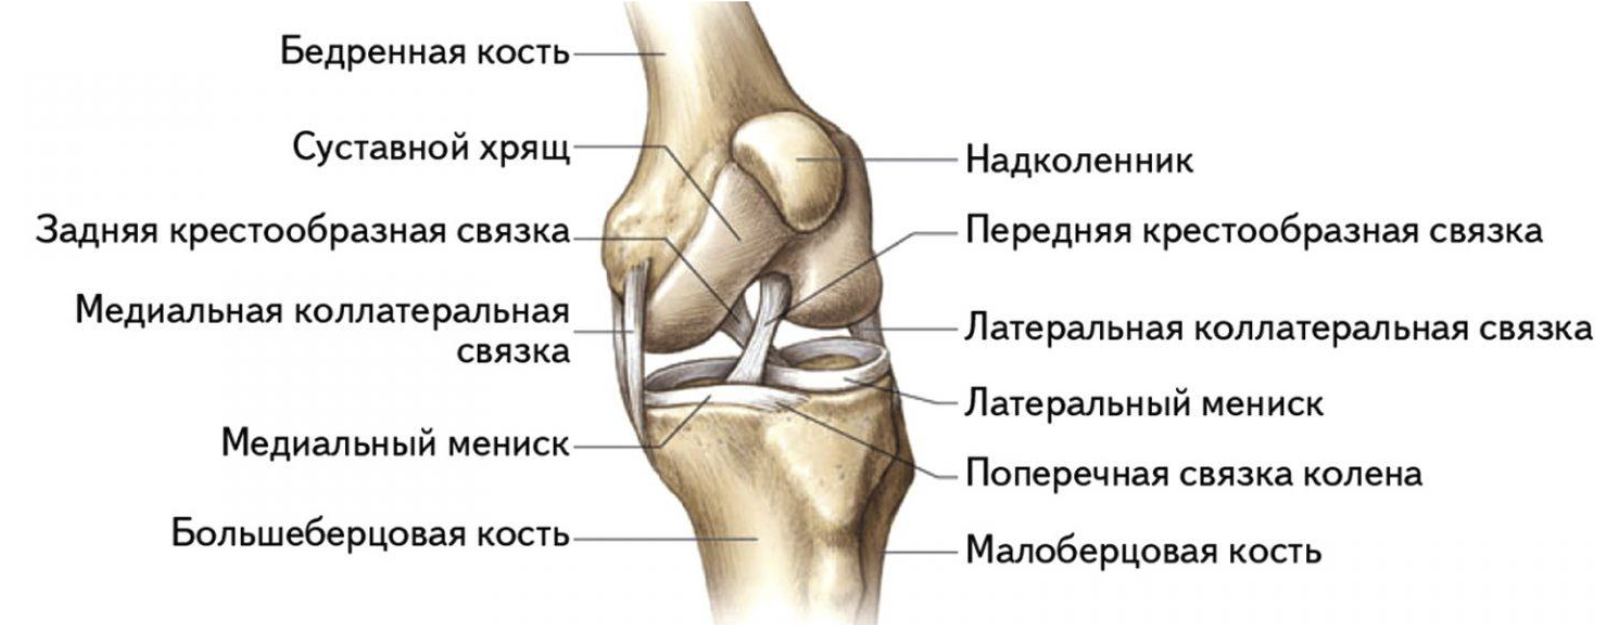 Коленный сустав строение анатомия связки. Суставной хрящ большеберцовой кости. Коленный сустав анатомия вид сбоку. Поперечная связка коленного сустава анатомия.